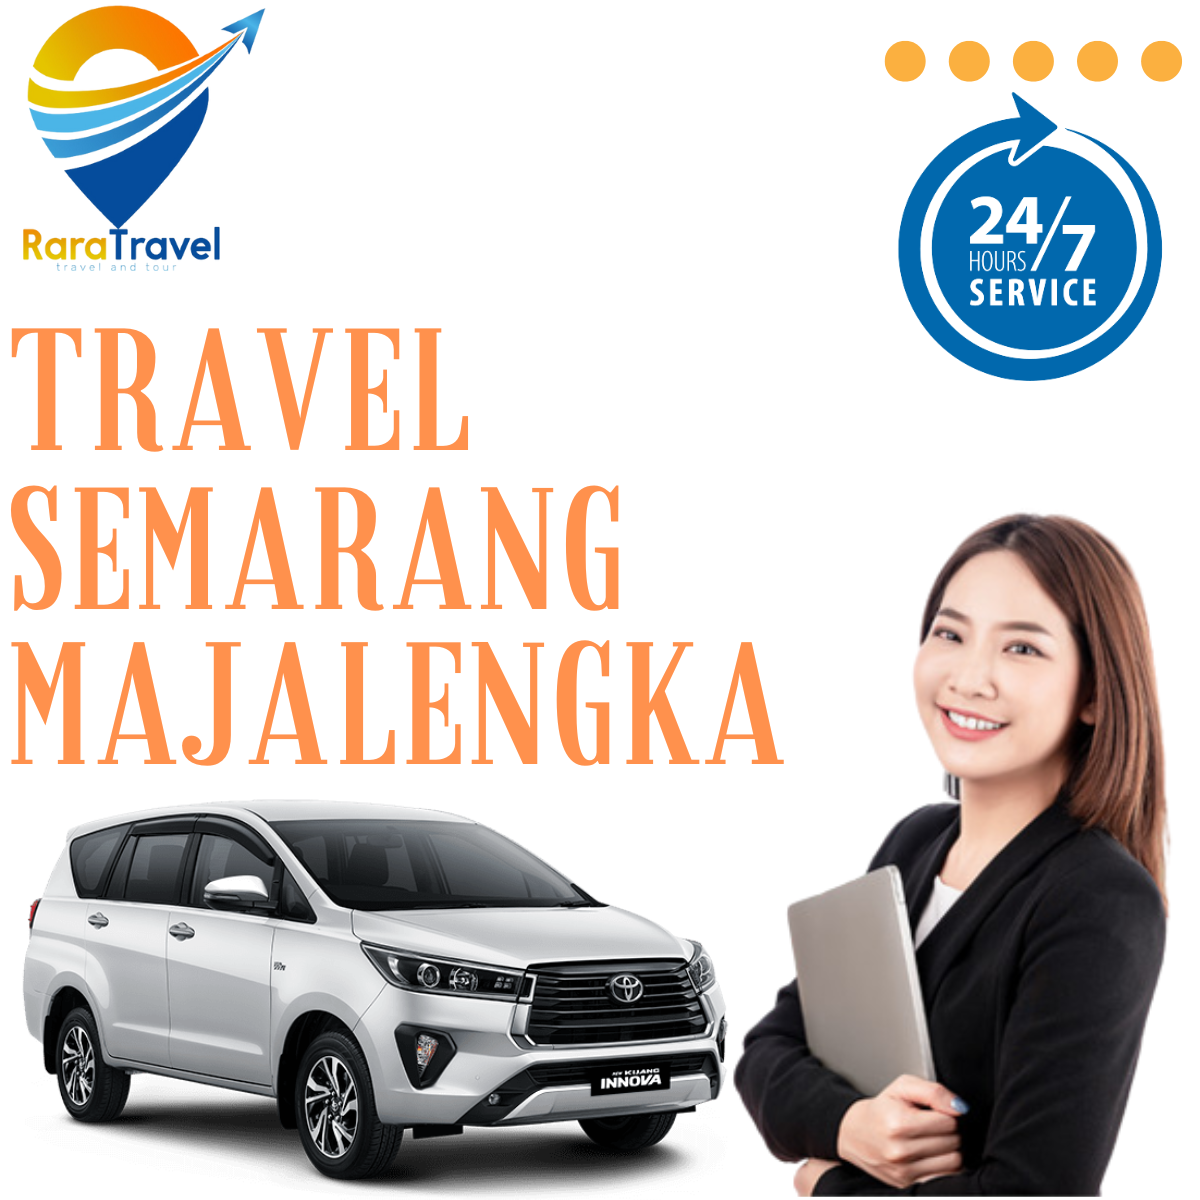 Travel Semarang Majalengka PP Murah - RARATRAVEL.ID